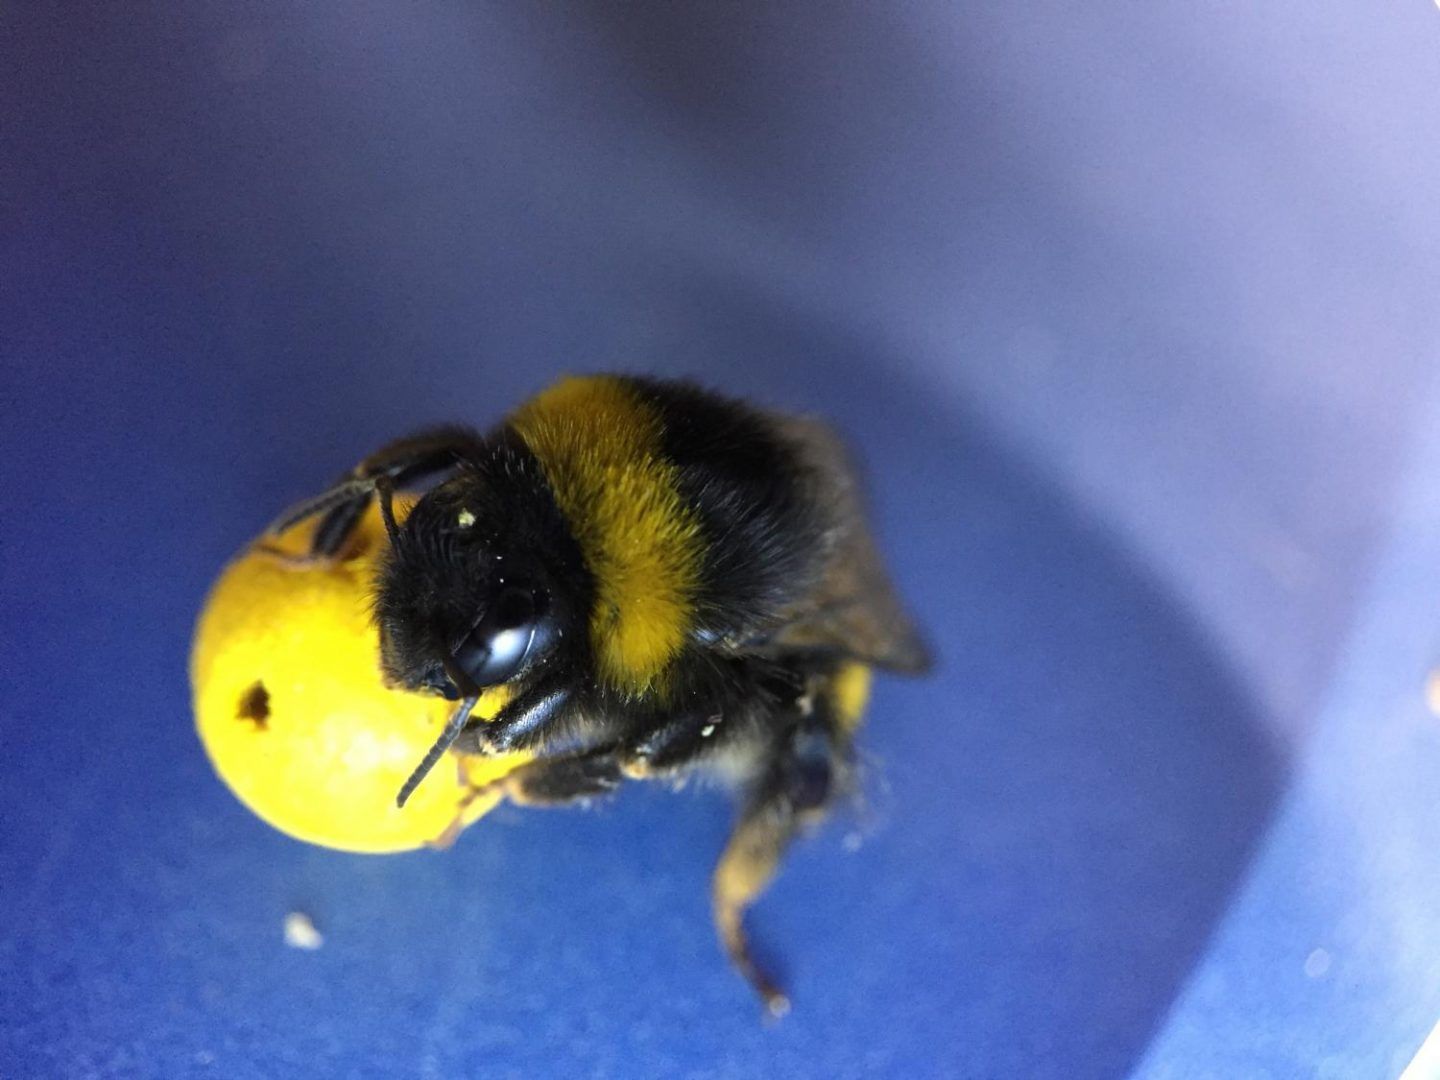 النحل يلعب بالكرة و يسجل الاهداف ، الكشف عن قدرات فريدة لدى النحل الطنان